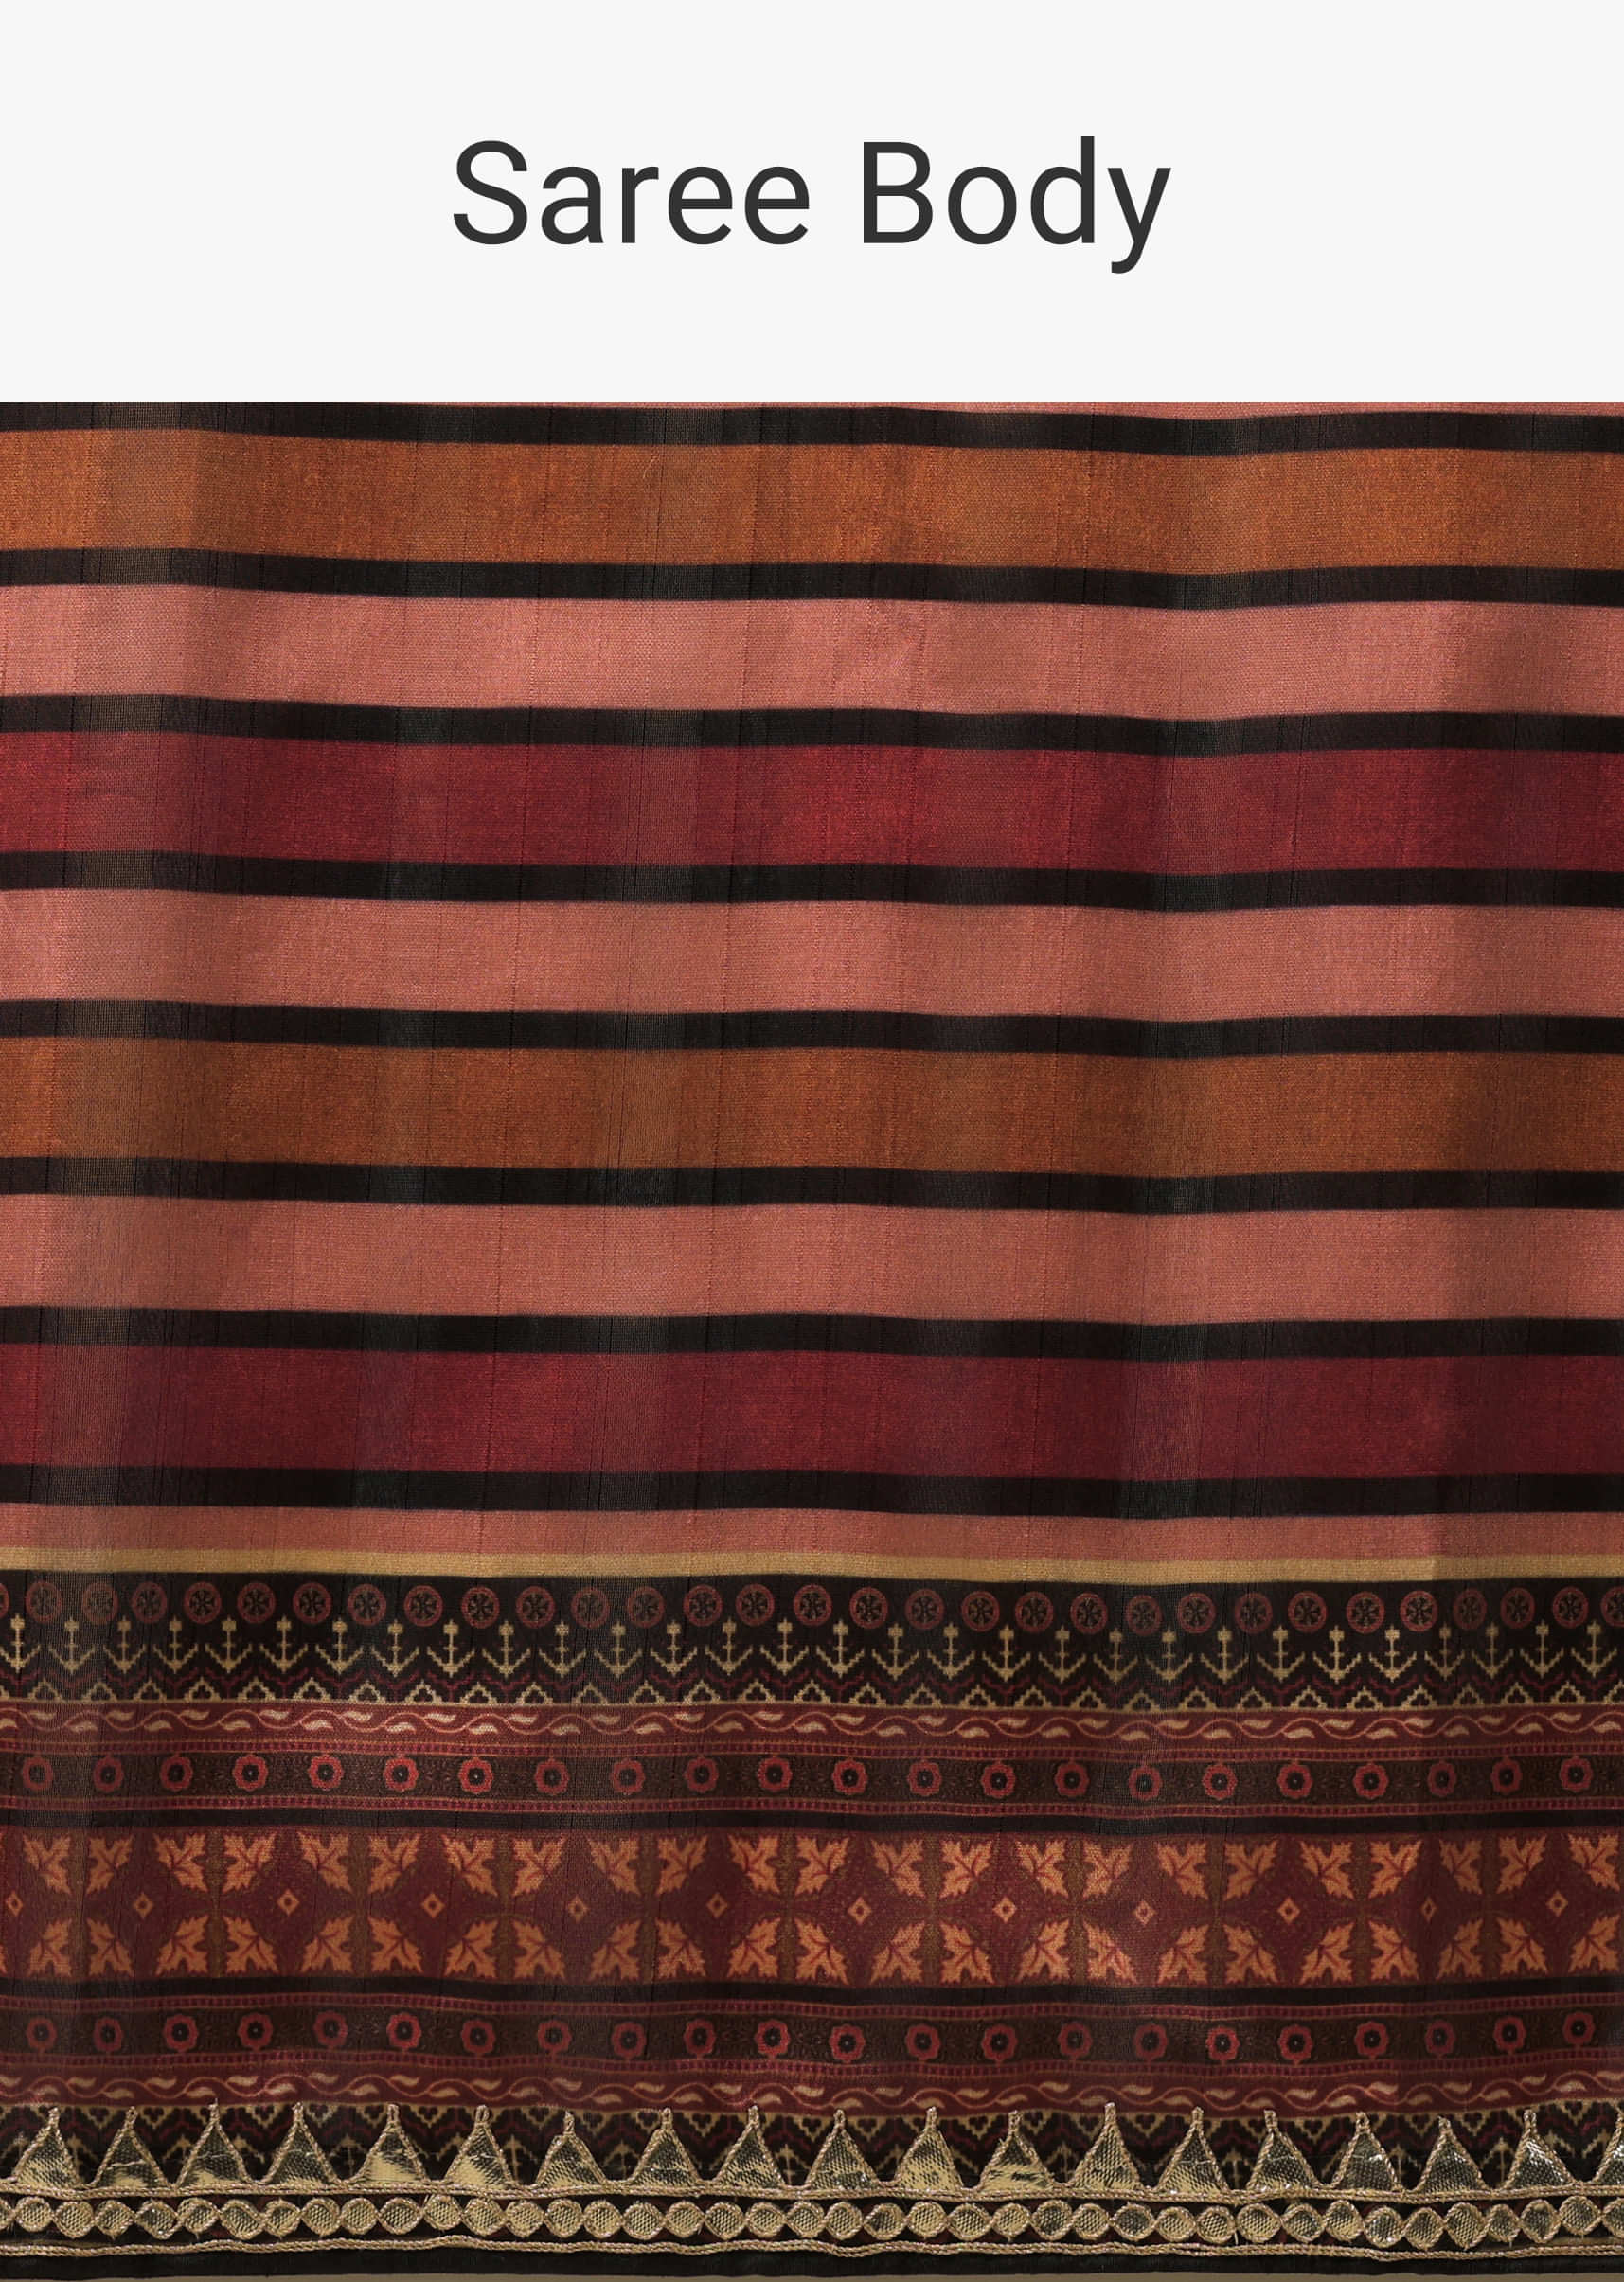 Multicolor Stripe Printed Saree In Chanderi Cotton With Gotta Patti Work On The Borders